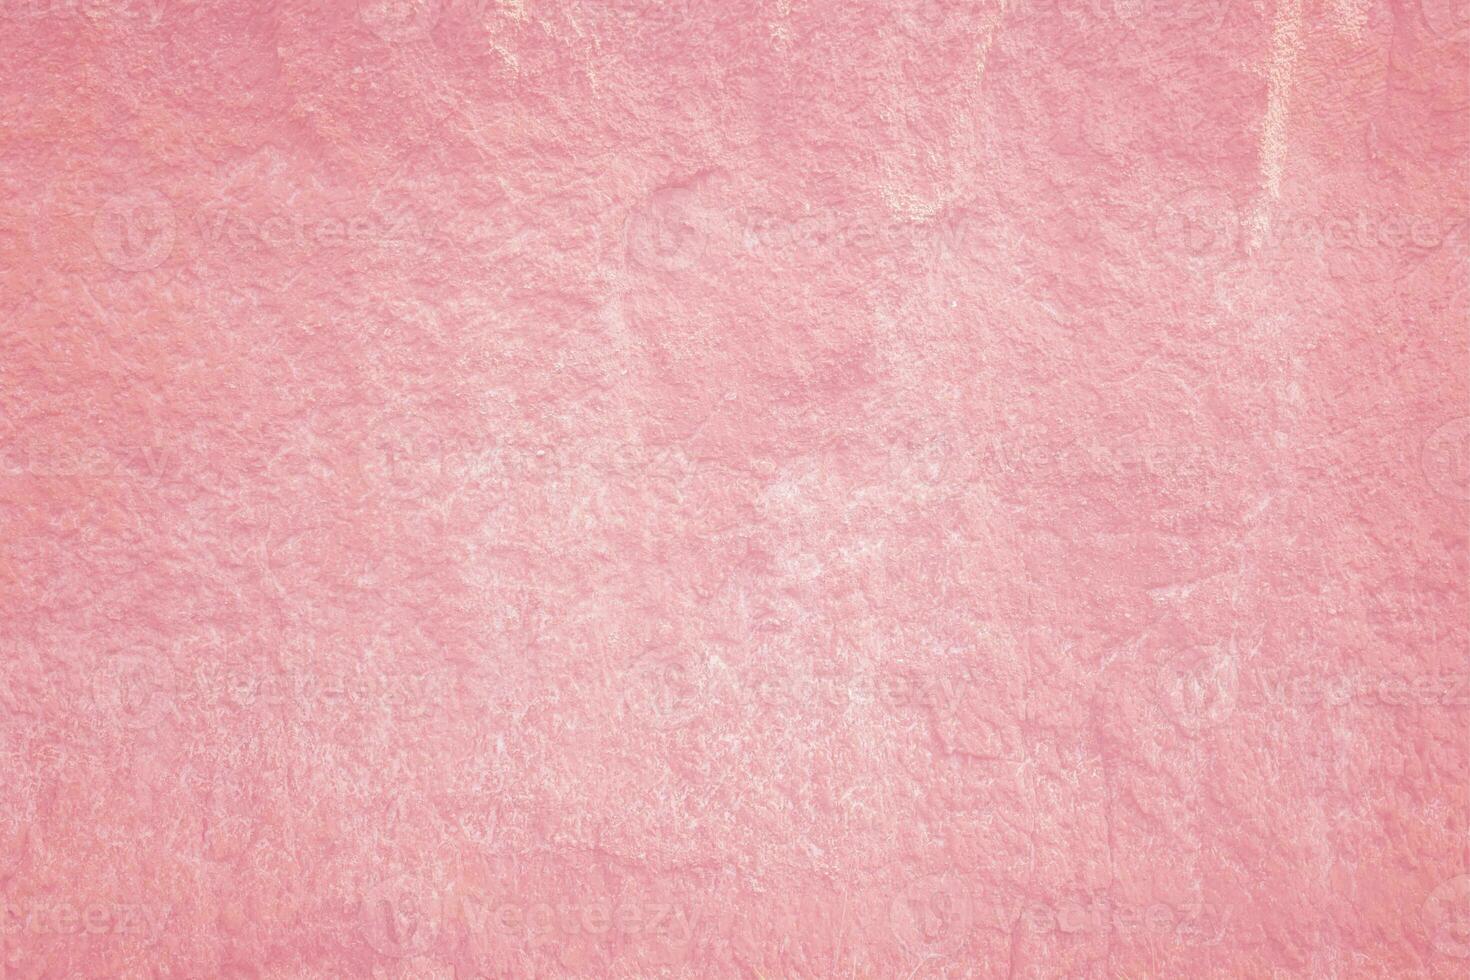 vintage de fond de texture plâtre rose clair. surface de mur de ciment peint abstrait. photo